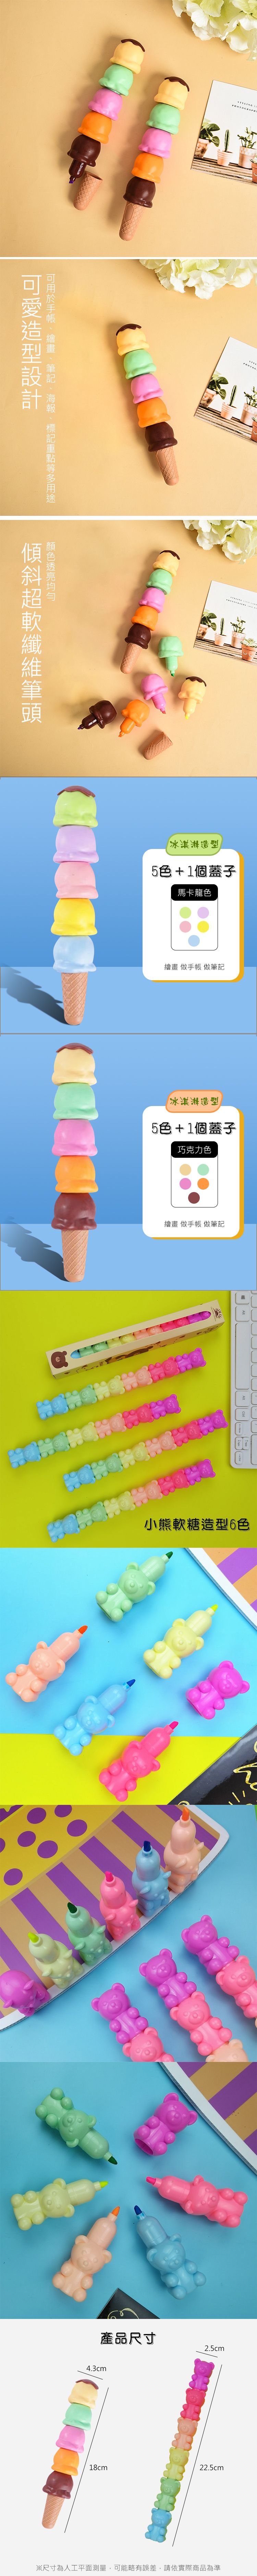 造型 冰淇淋